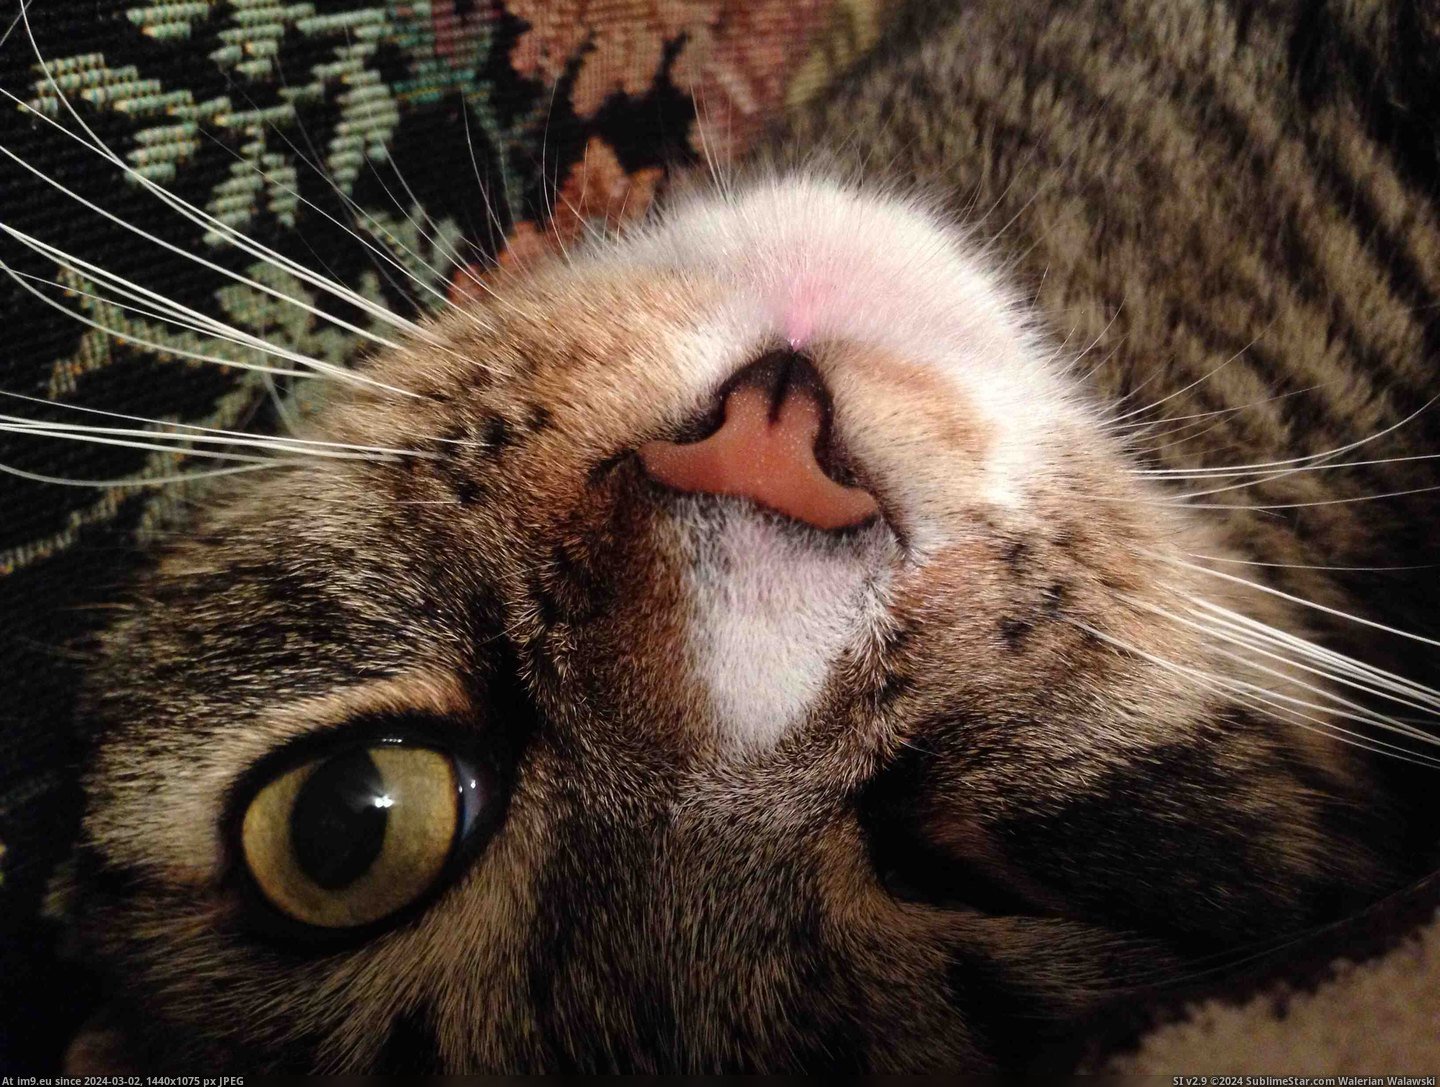 #Cats  #Weirdo [Cats] My little weirdo Pic. (Bild von album My r/CATS favs))